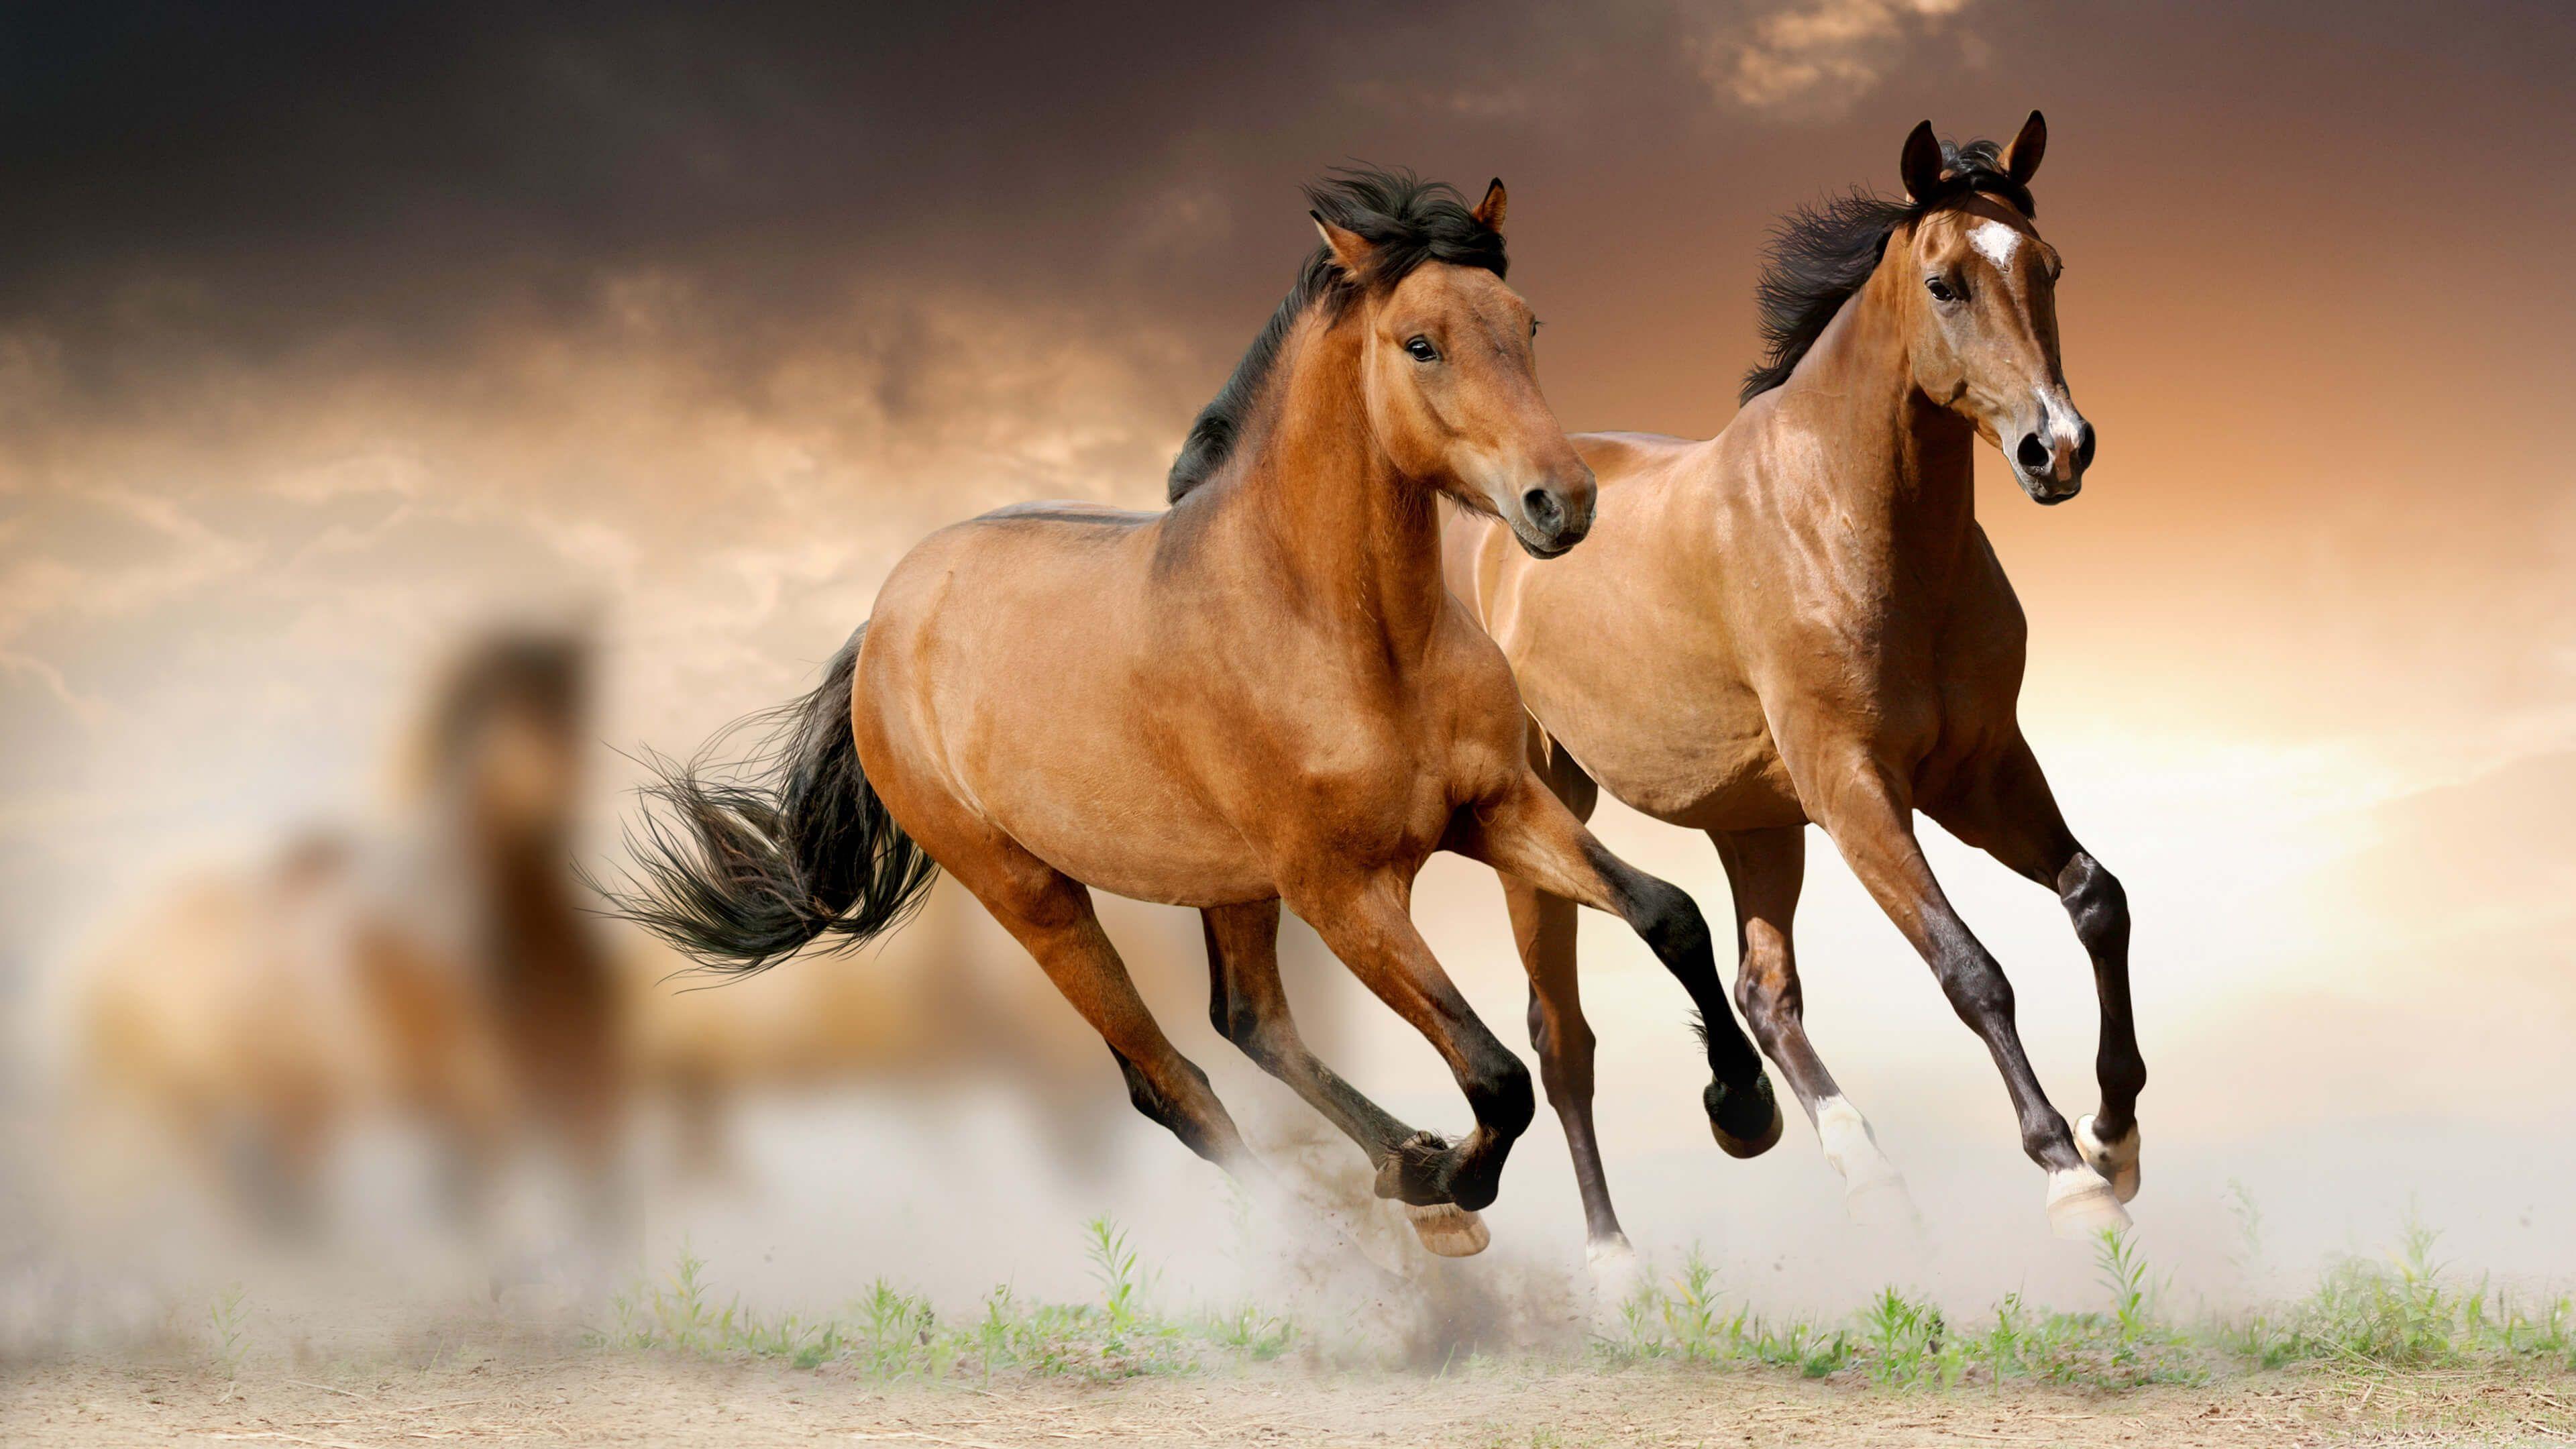 Brown Horses Running 4K Wallpaper. Animals 4K Wallpaper. Horse wallpaper, Horses, Beautiful horses